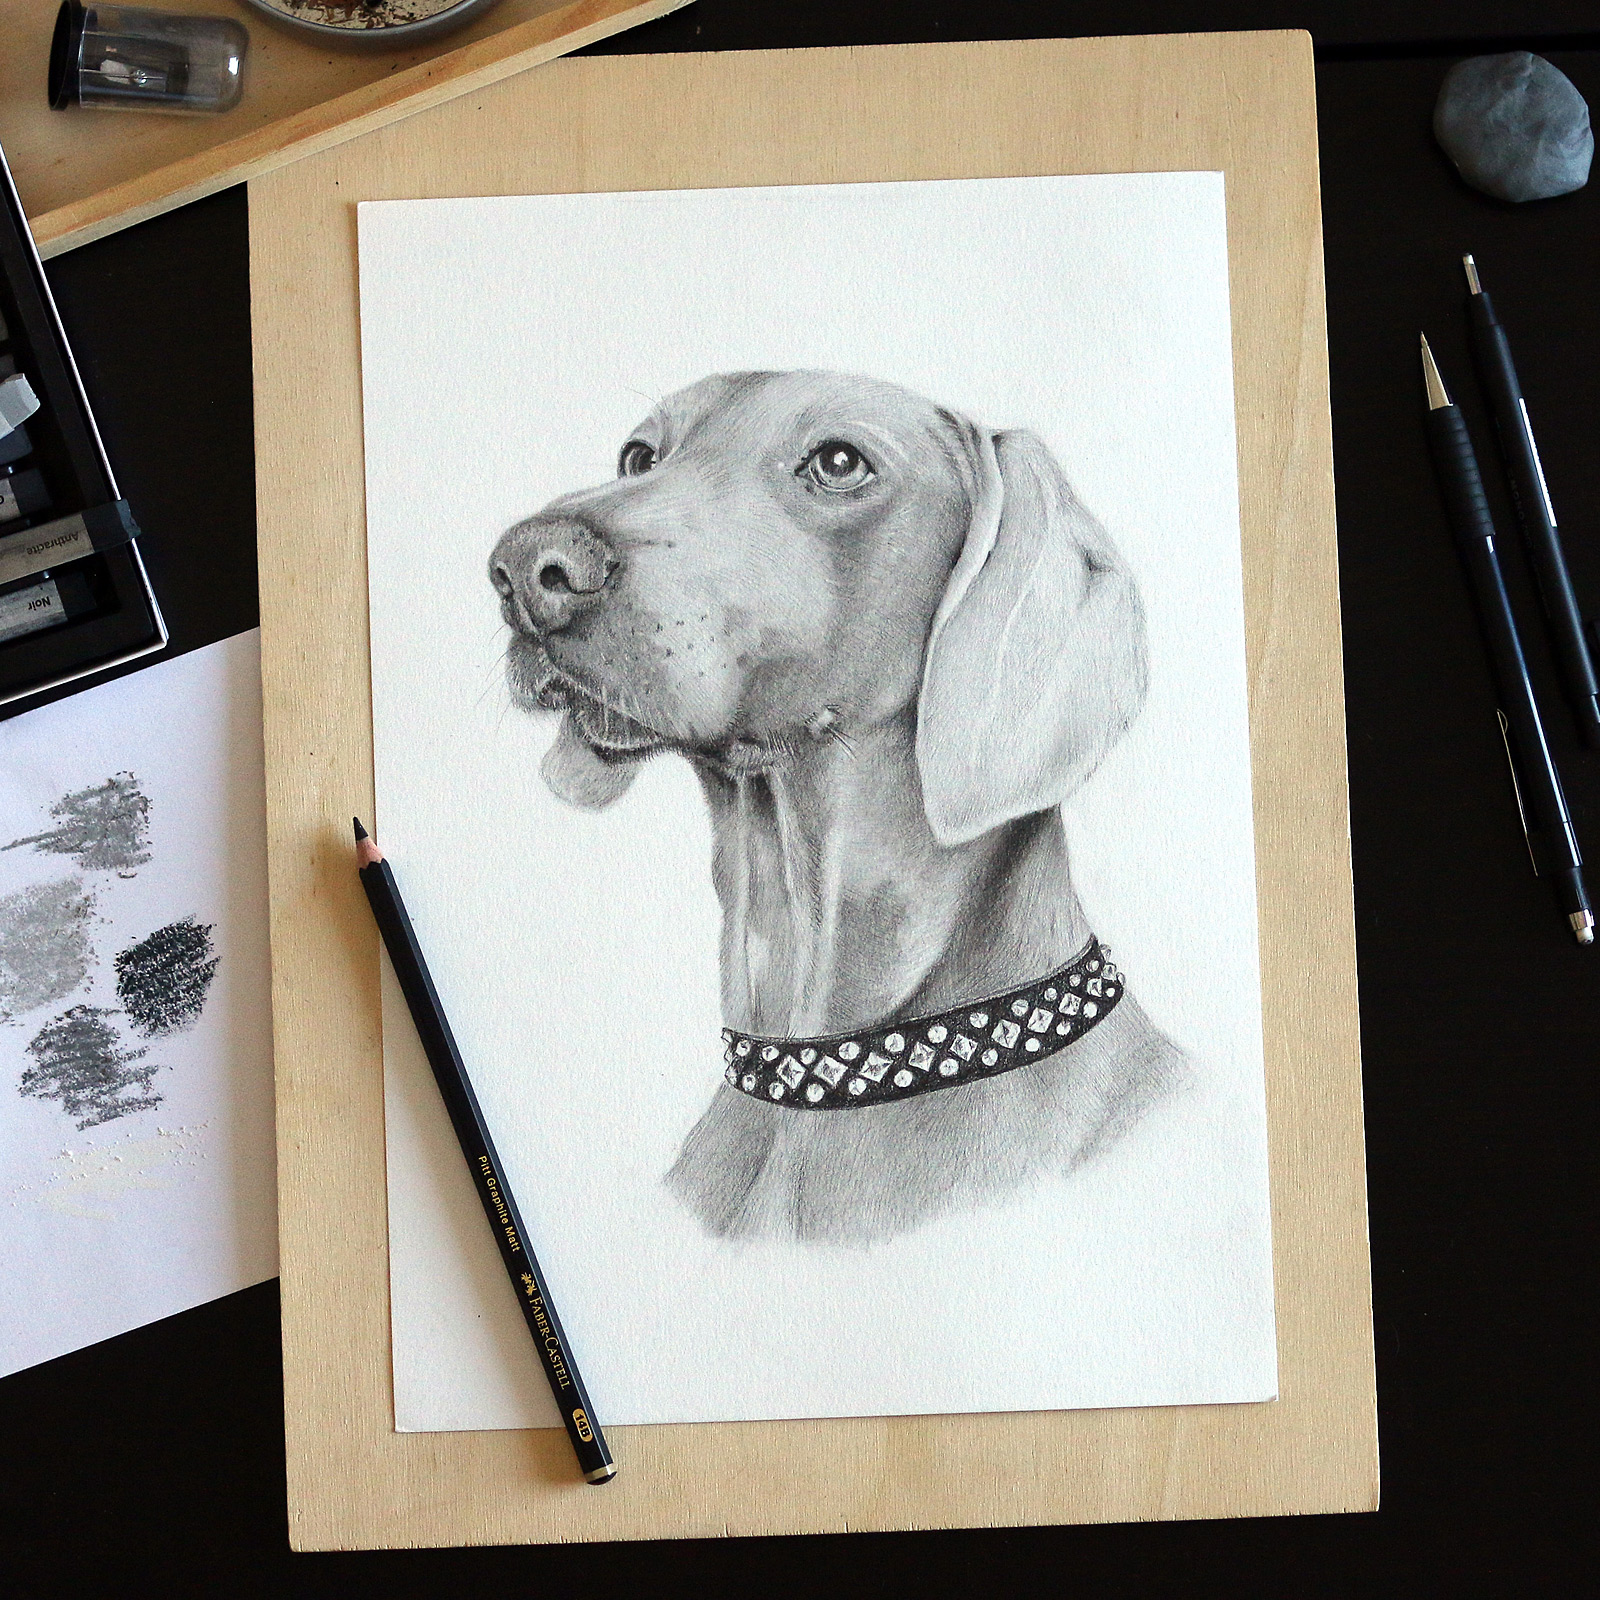 Fertige Zeichnung eines Hundeportraits von der Künstlerin Lisa Albrecht